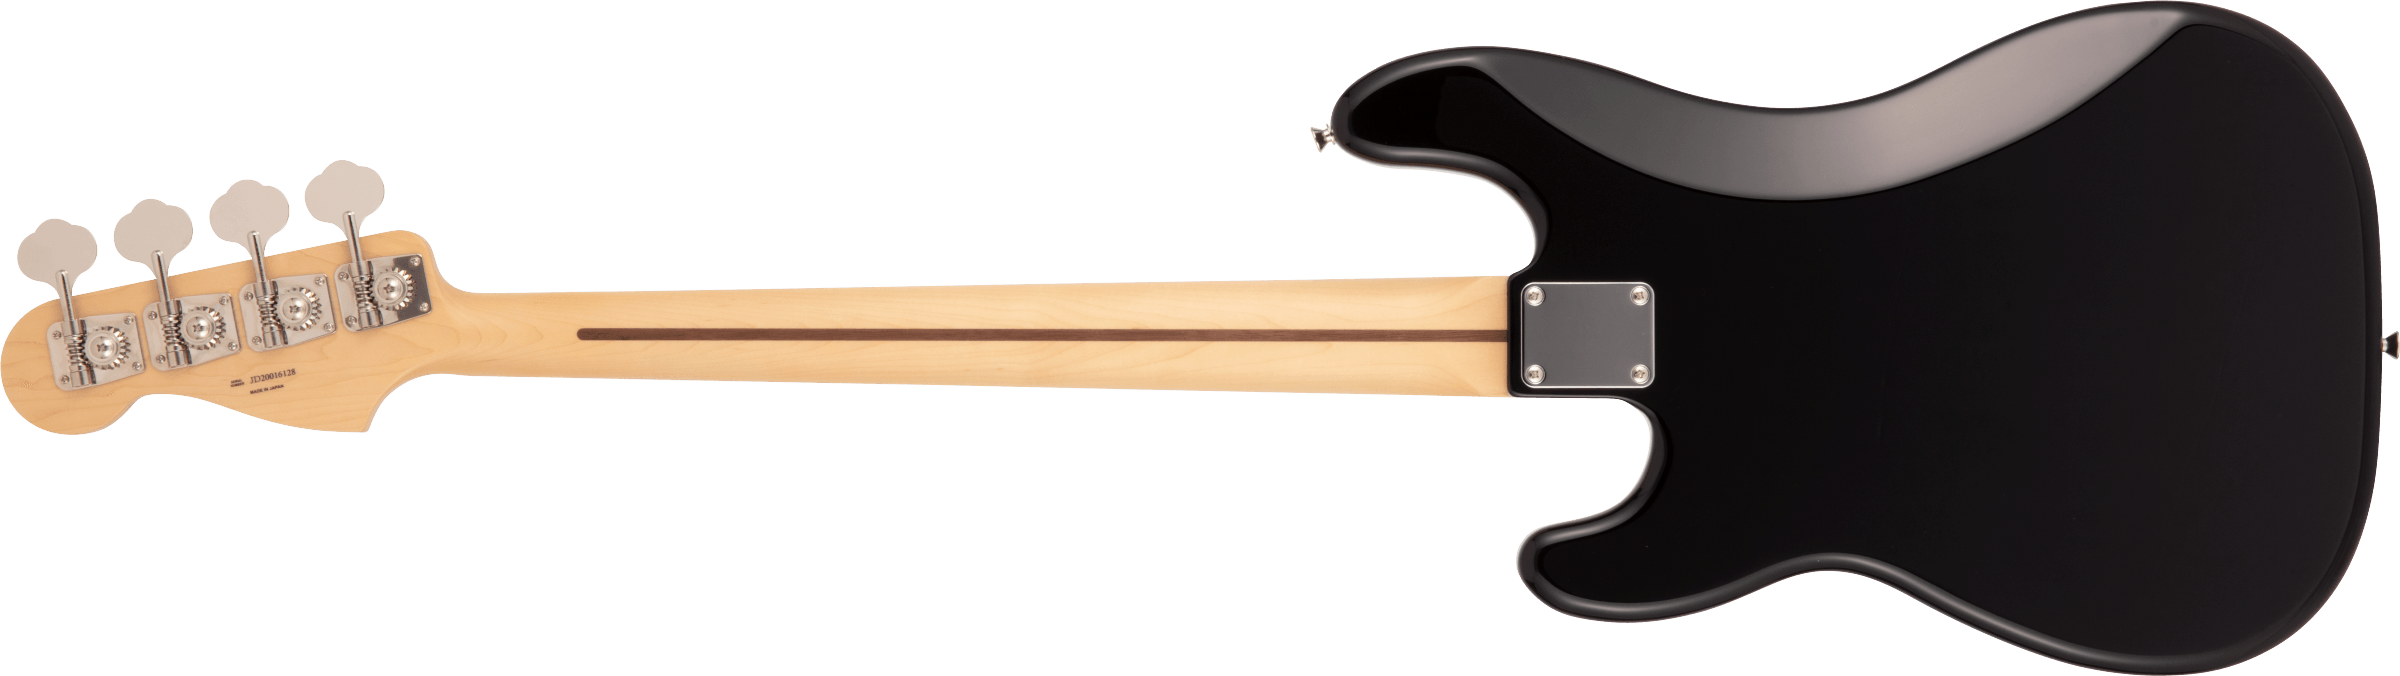 Fender Precision Bass Hybrid Ii Japan Mn - Black - Bajo eléctrico de cuerpo sólido - Variation 1